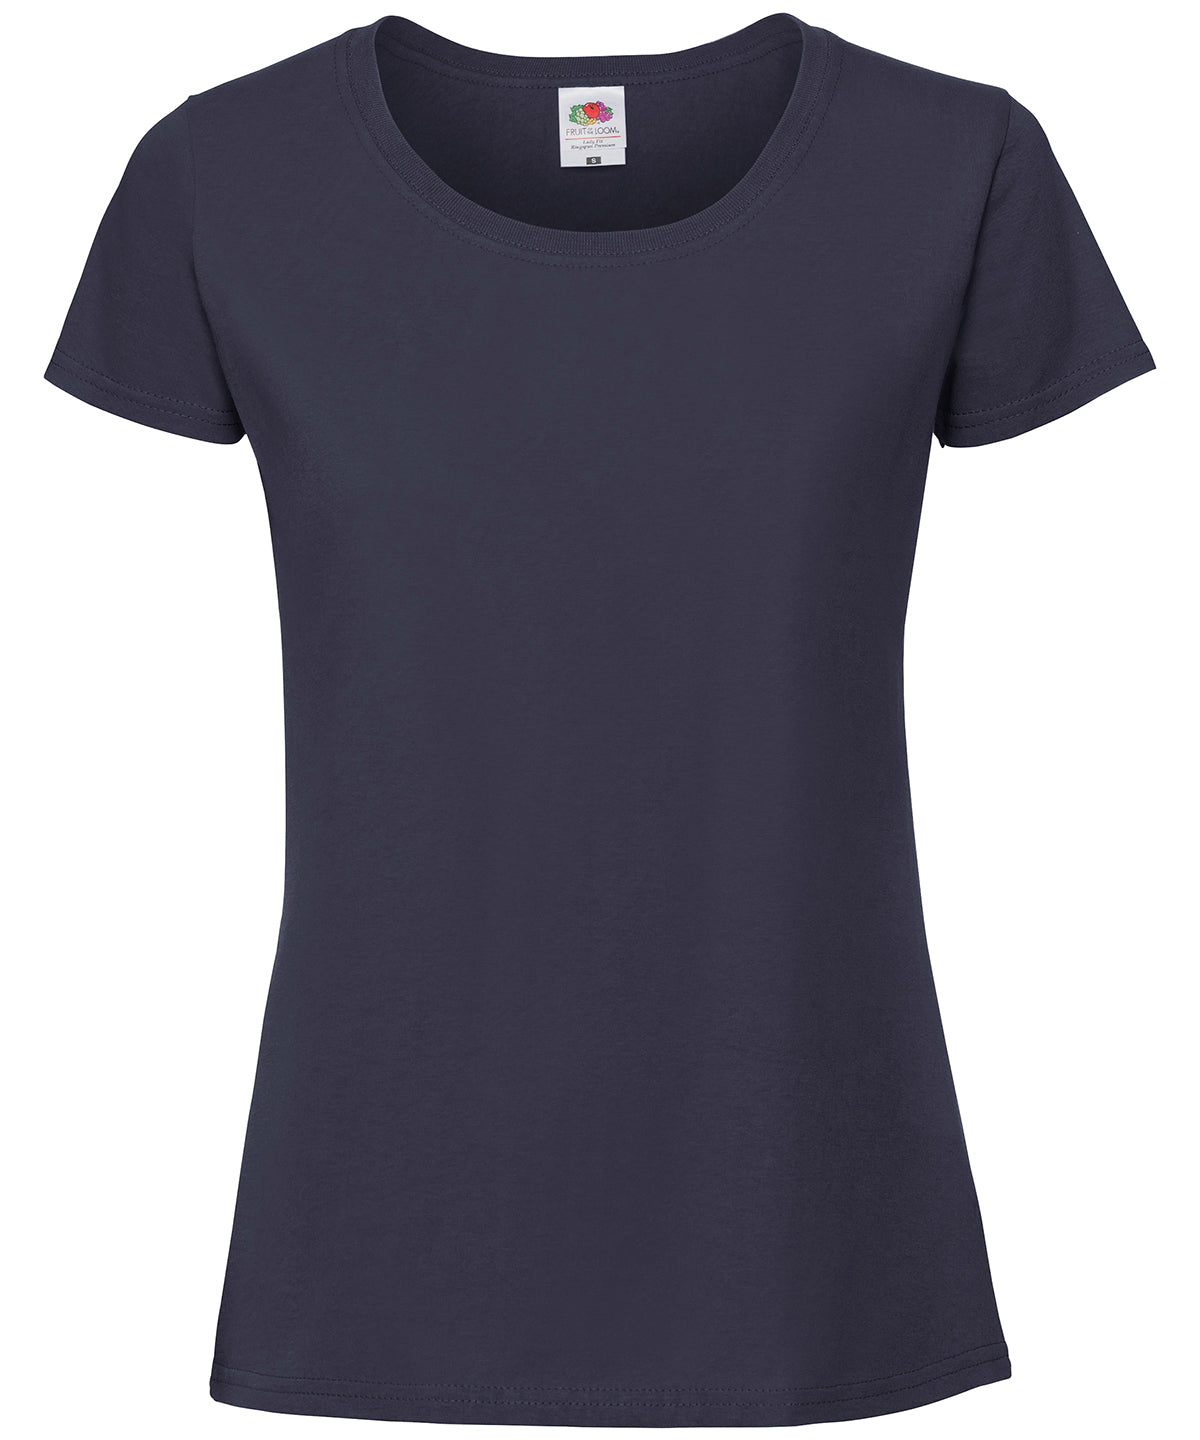 Stuttermabolir - Women's Iconic 195 Ringspun Premium T-shirt